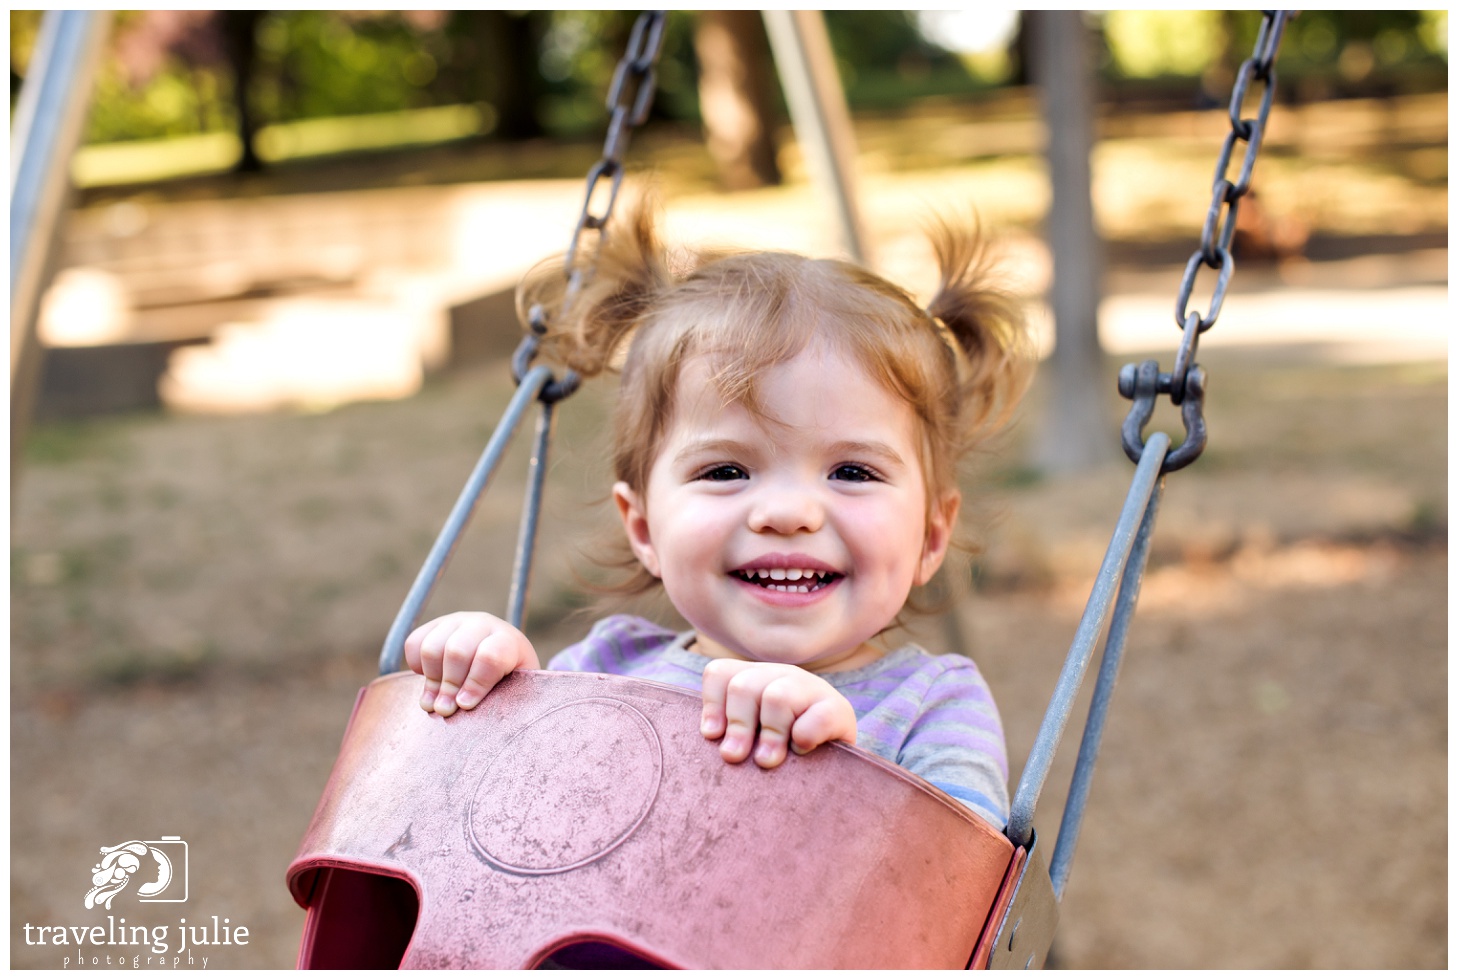 Smiling toddler on swing